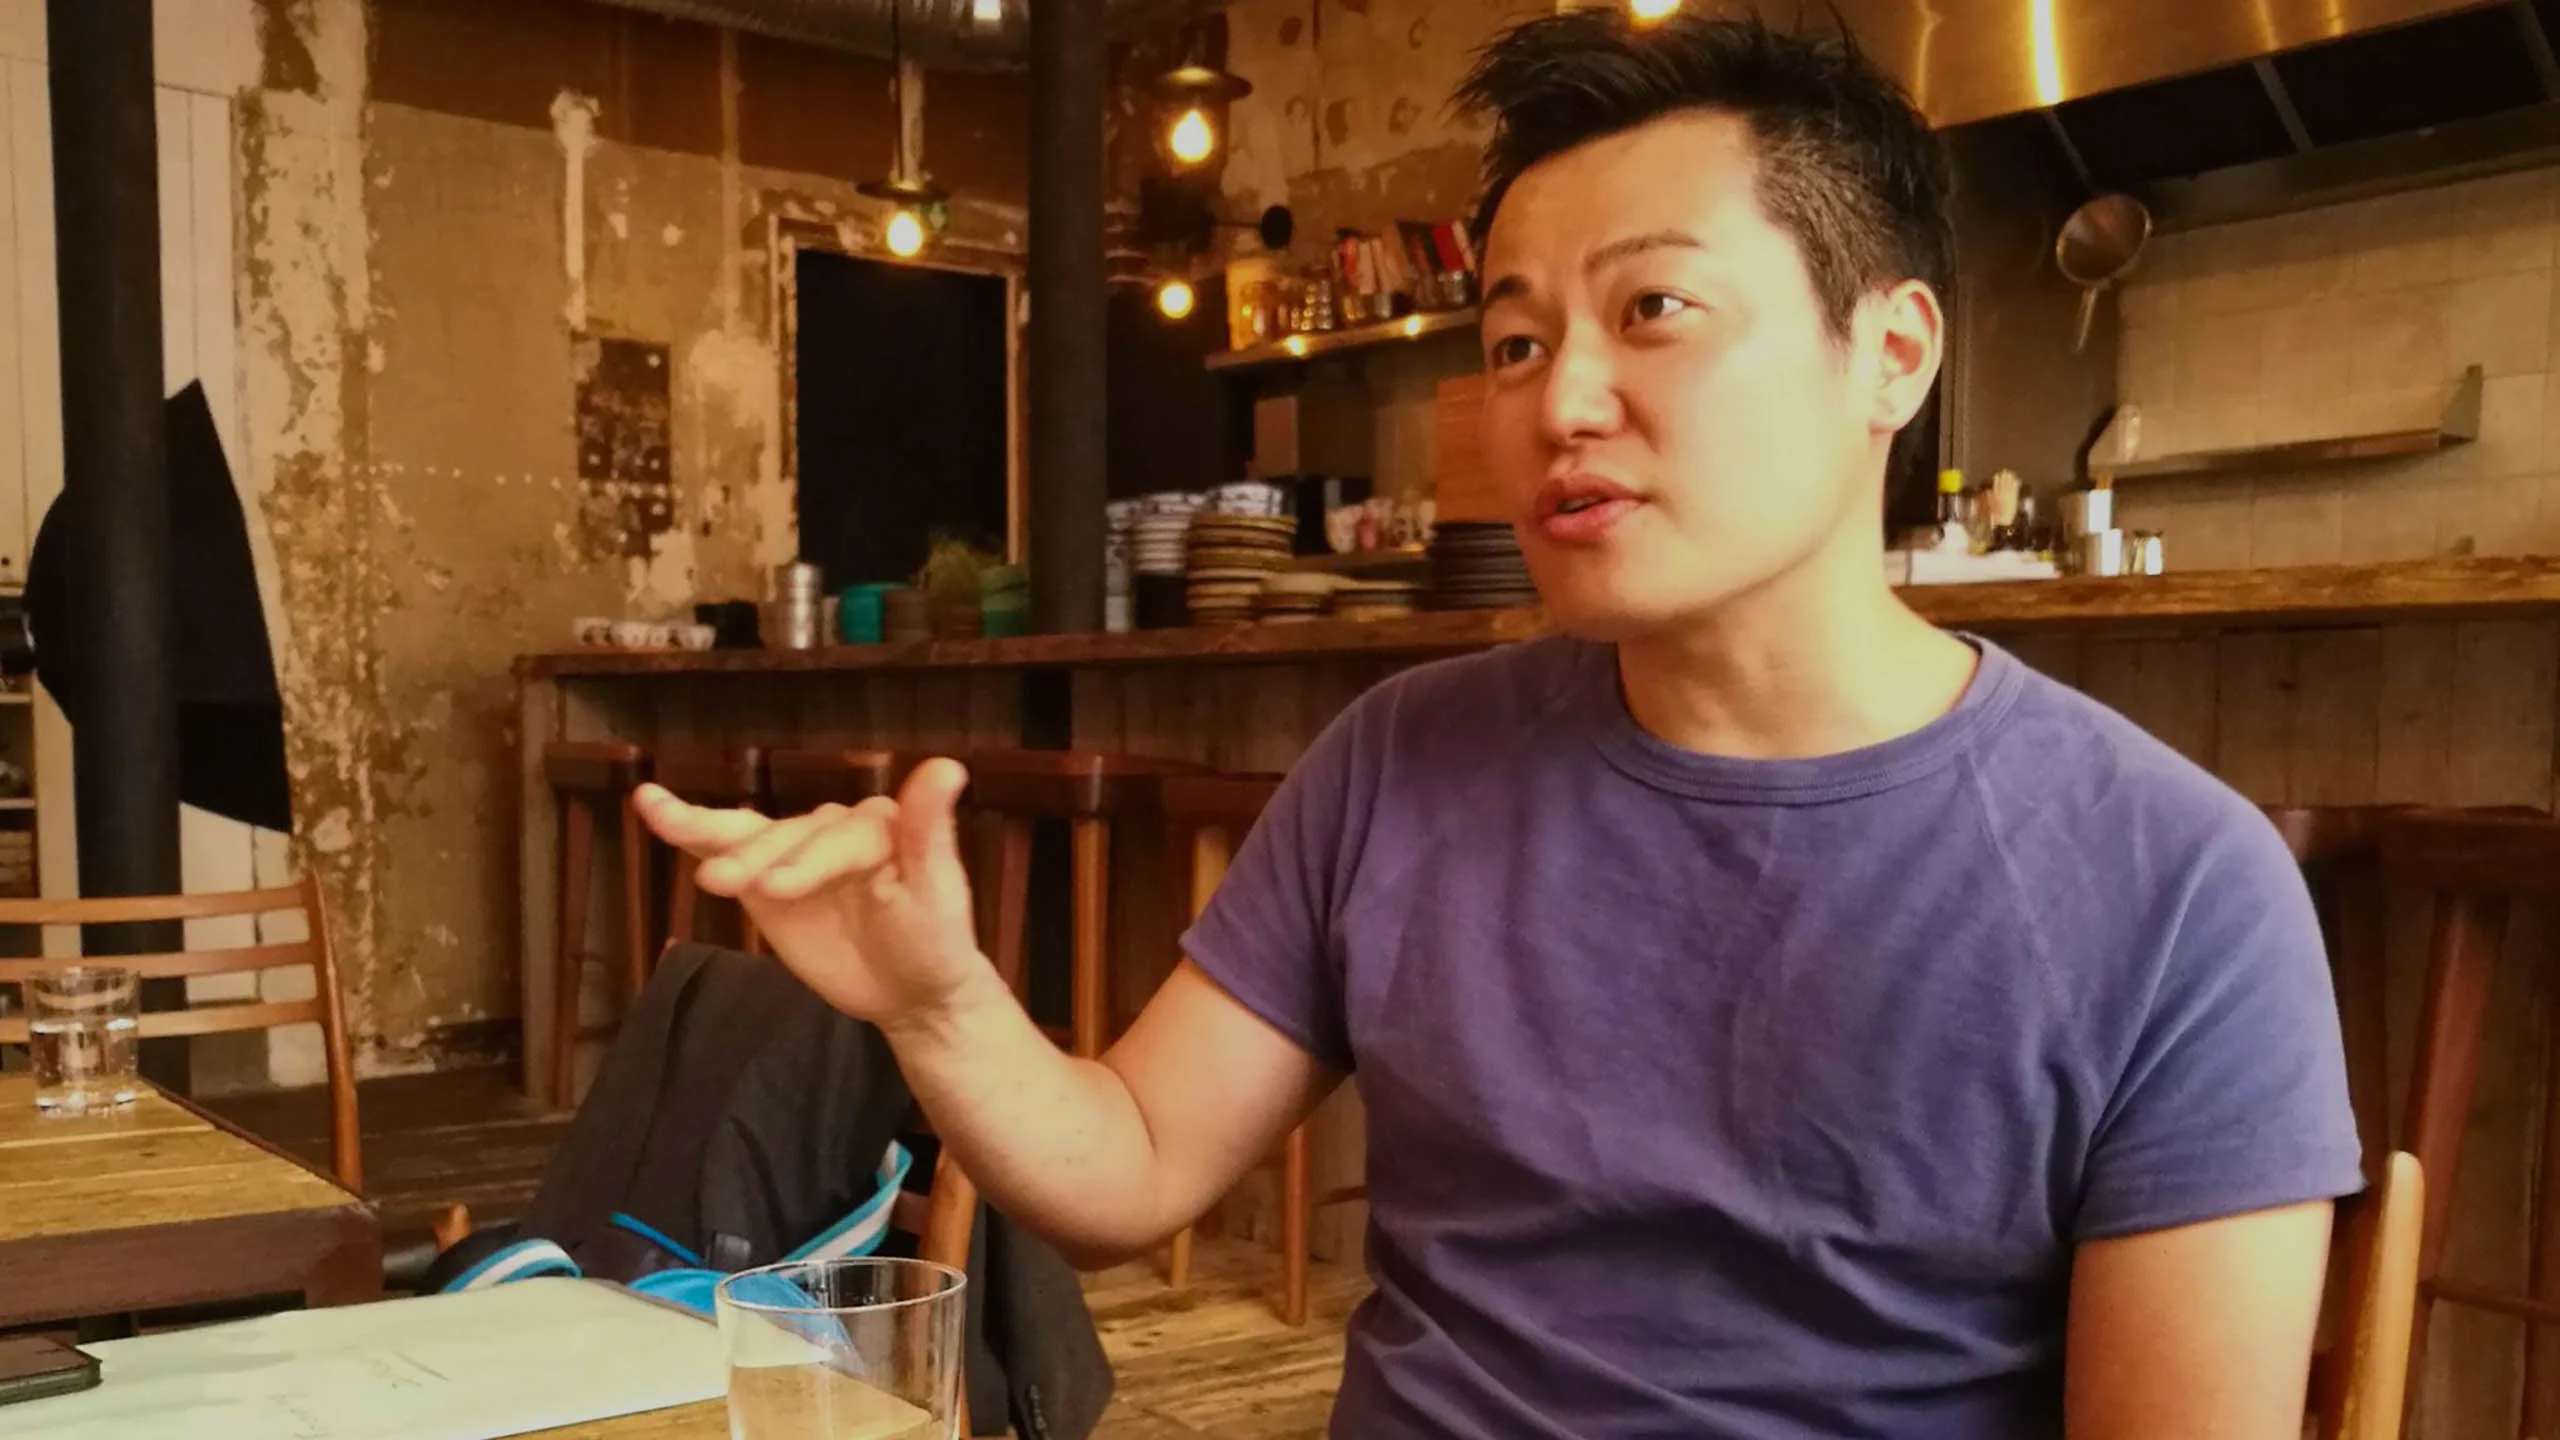 Fallece el chef Taku Sekine luego de las graves acusaciones en su contra